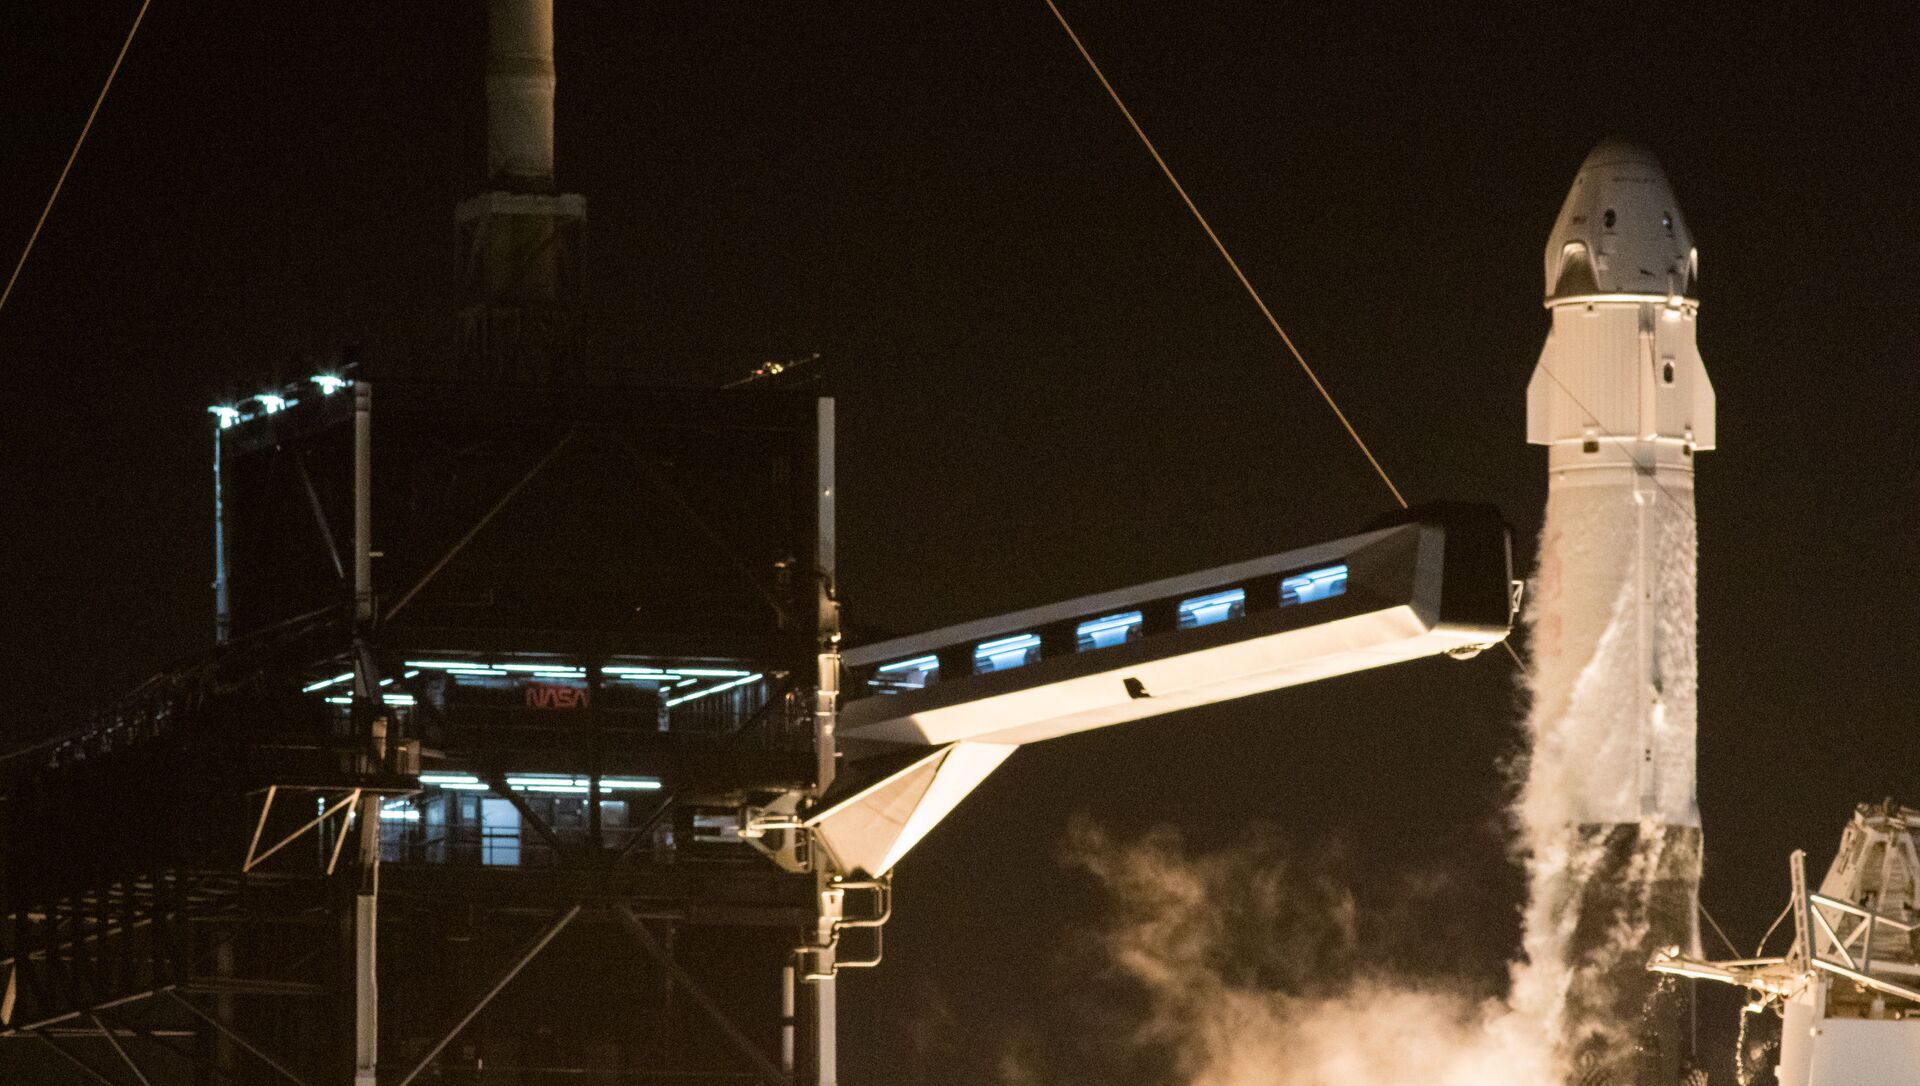 إطلاق مركبة سبيس إكس والتي تحمل اسم كرو دراغون عن طريق صاروخ فالكون 9، من مركز كينيدي للفضاء التابع لناسا في كيب كانافيرال بولاية فلوريدا، الولايات المتحدة 16 نوفمبر 2020 - سبوتنيك عربي, 1920, 18.09.2021